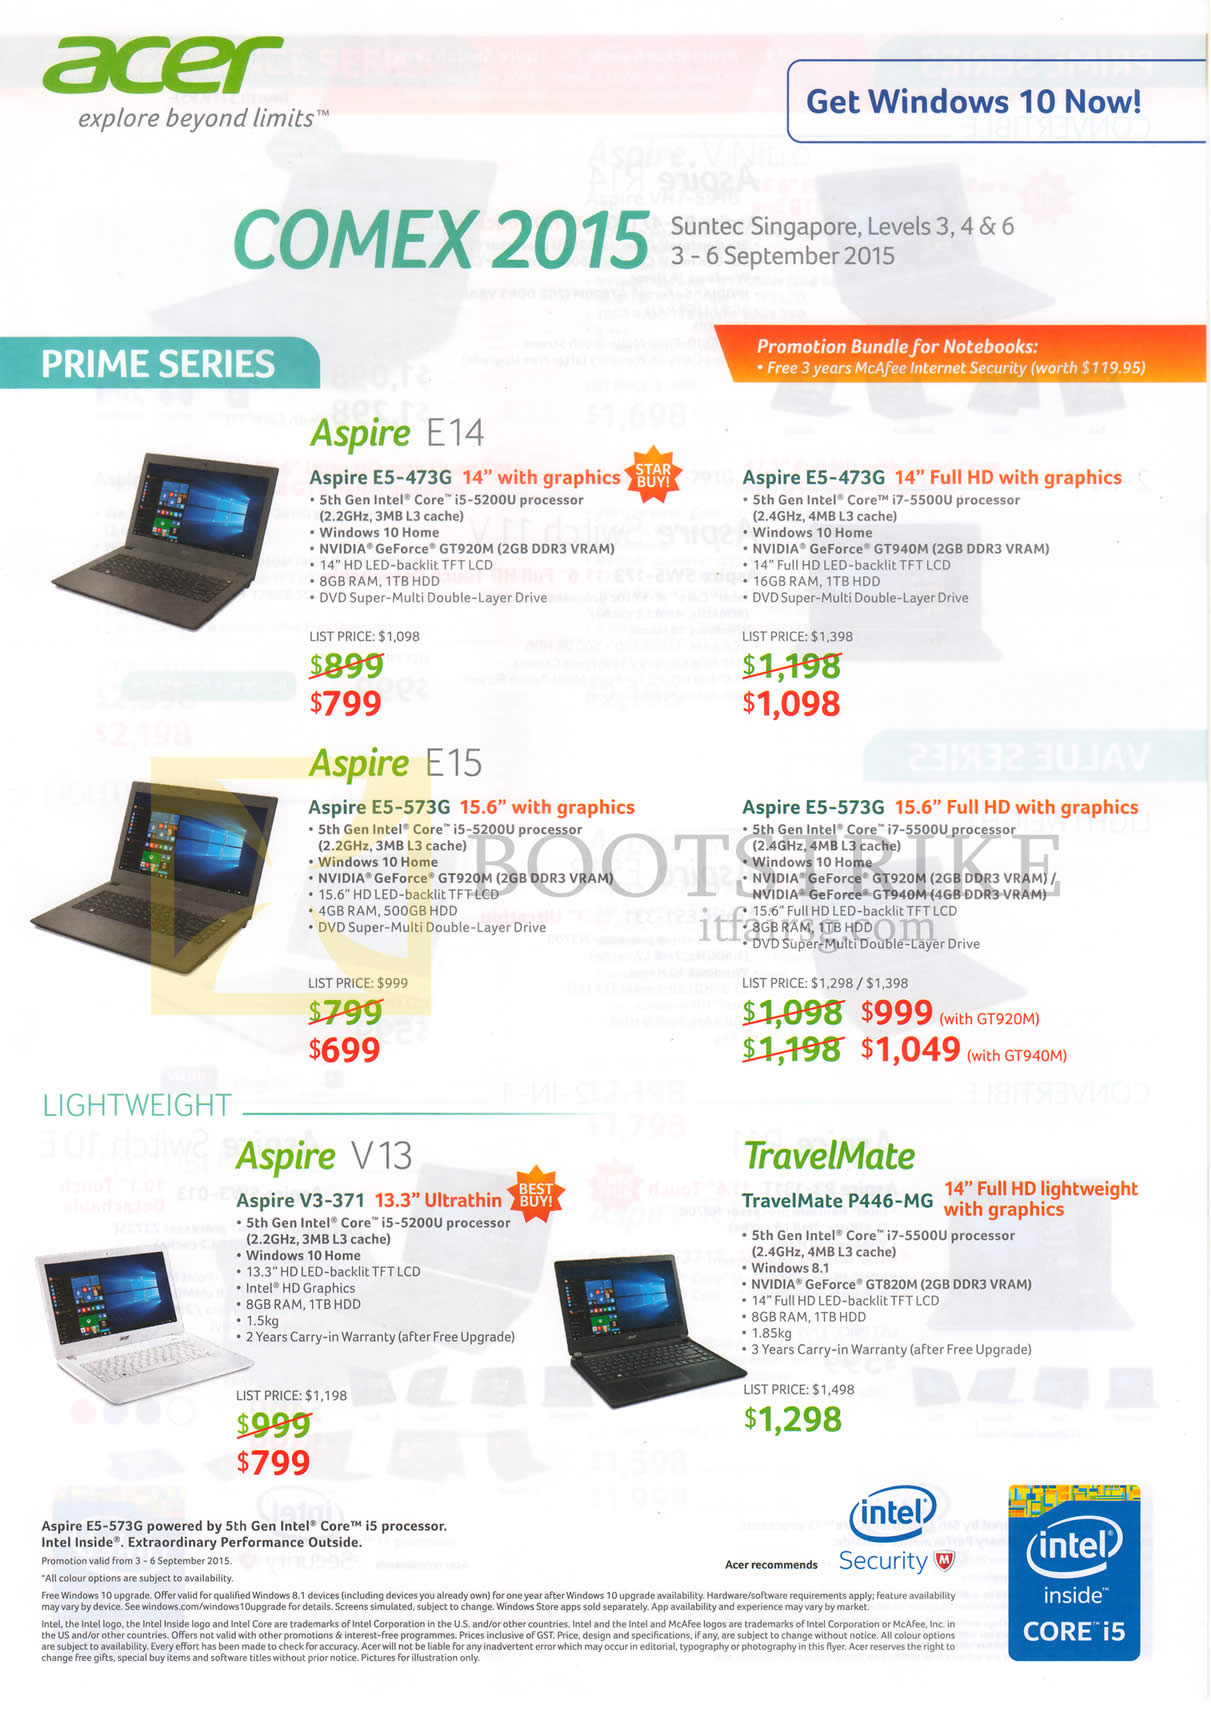 COMEX 2015 price list image brochure of Acer Aspire Notebooks, E5-473G, E5-573G, V3-371, TravelMate P446-MG, E14 E15 V13